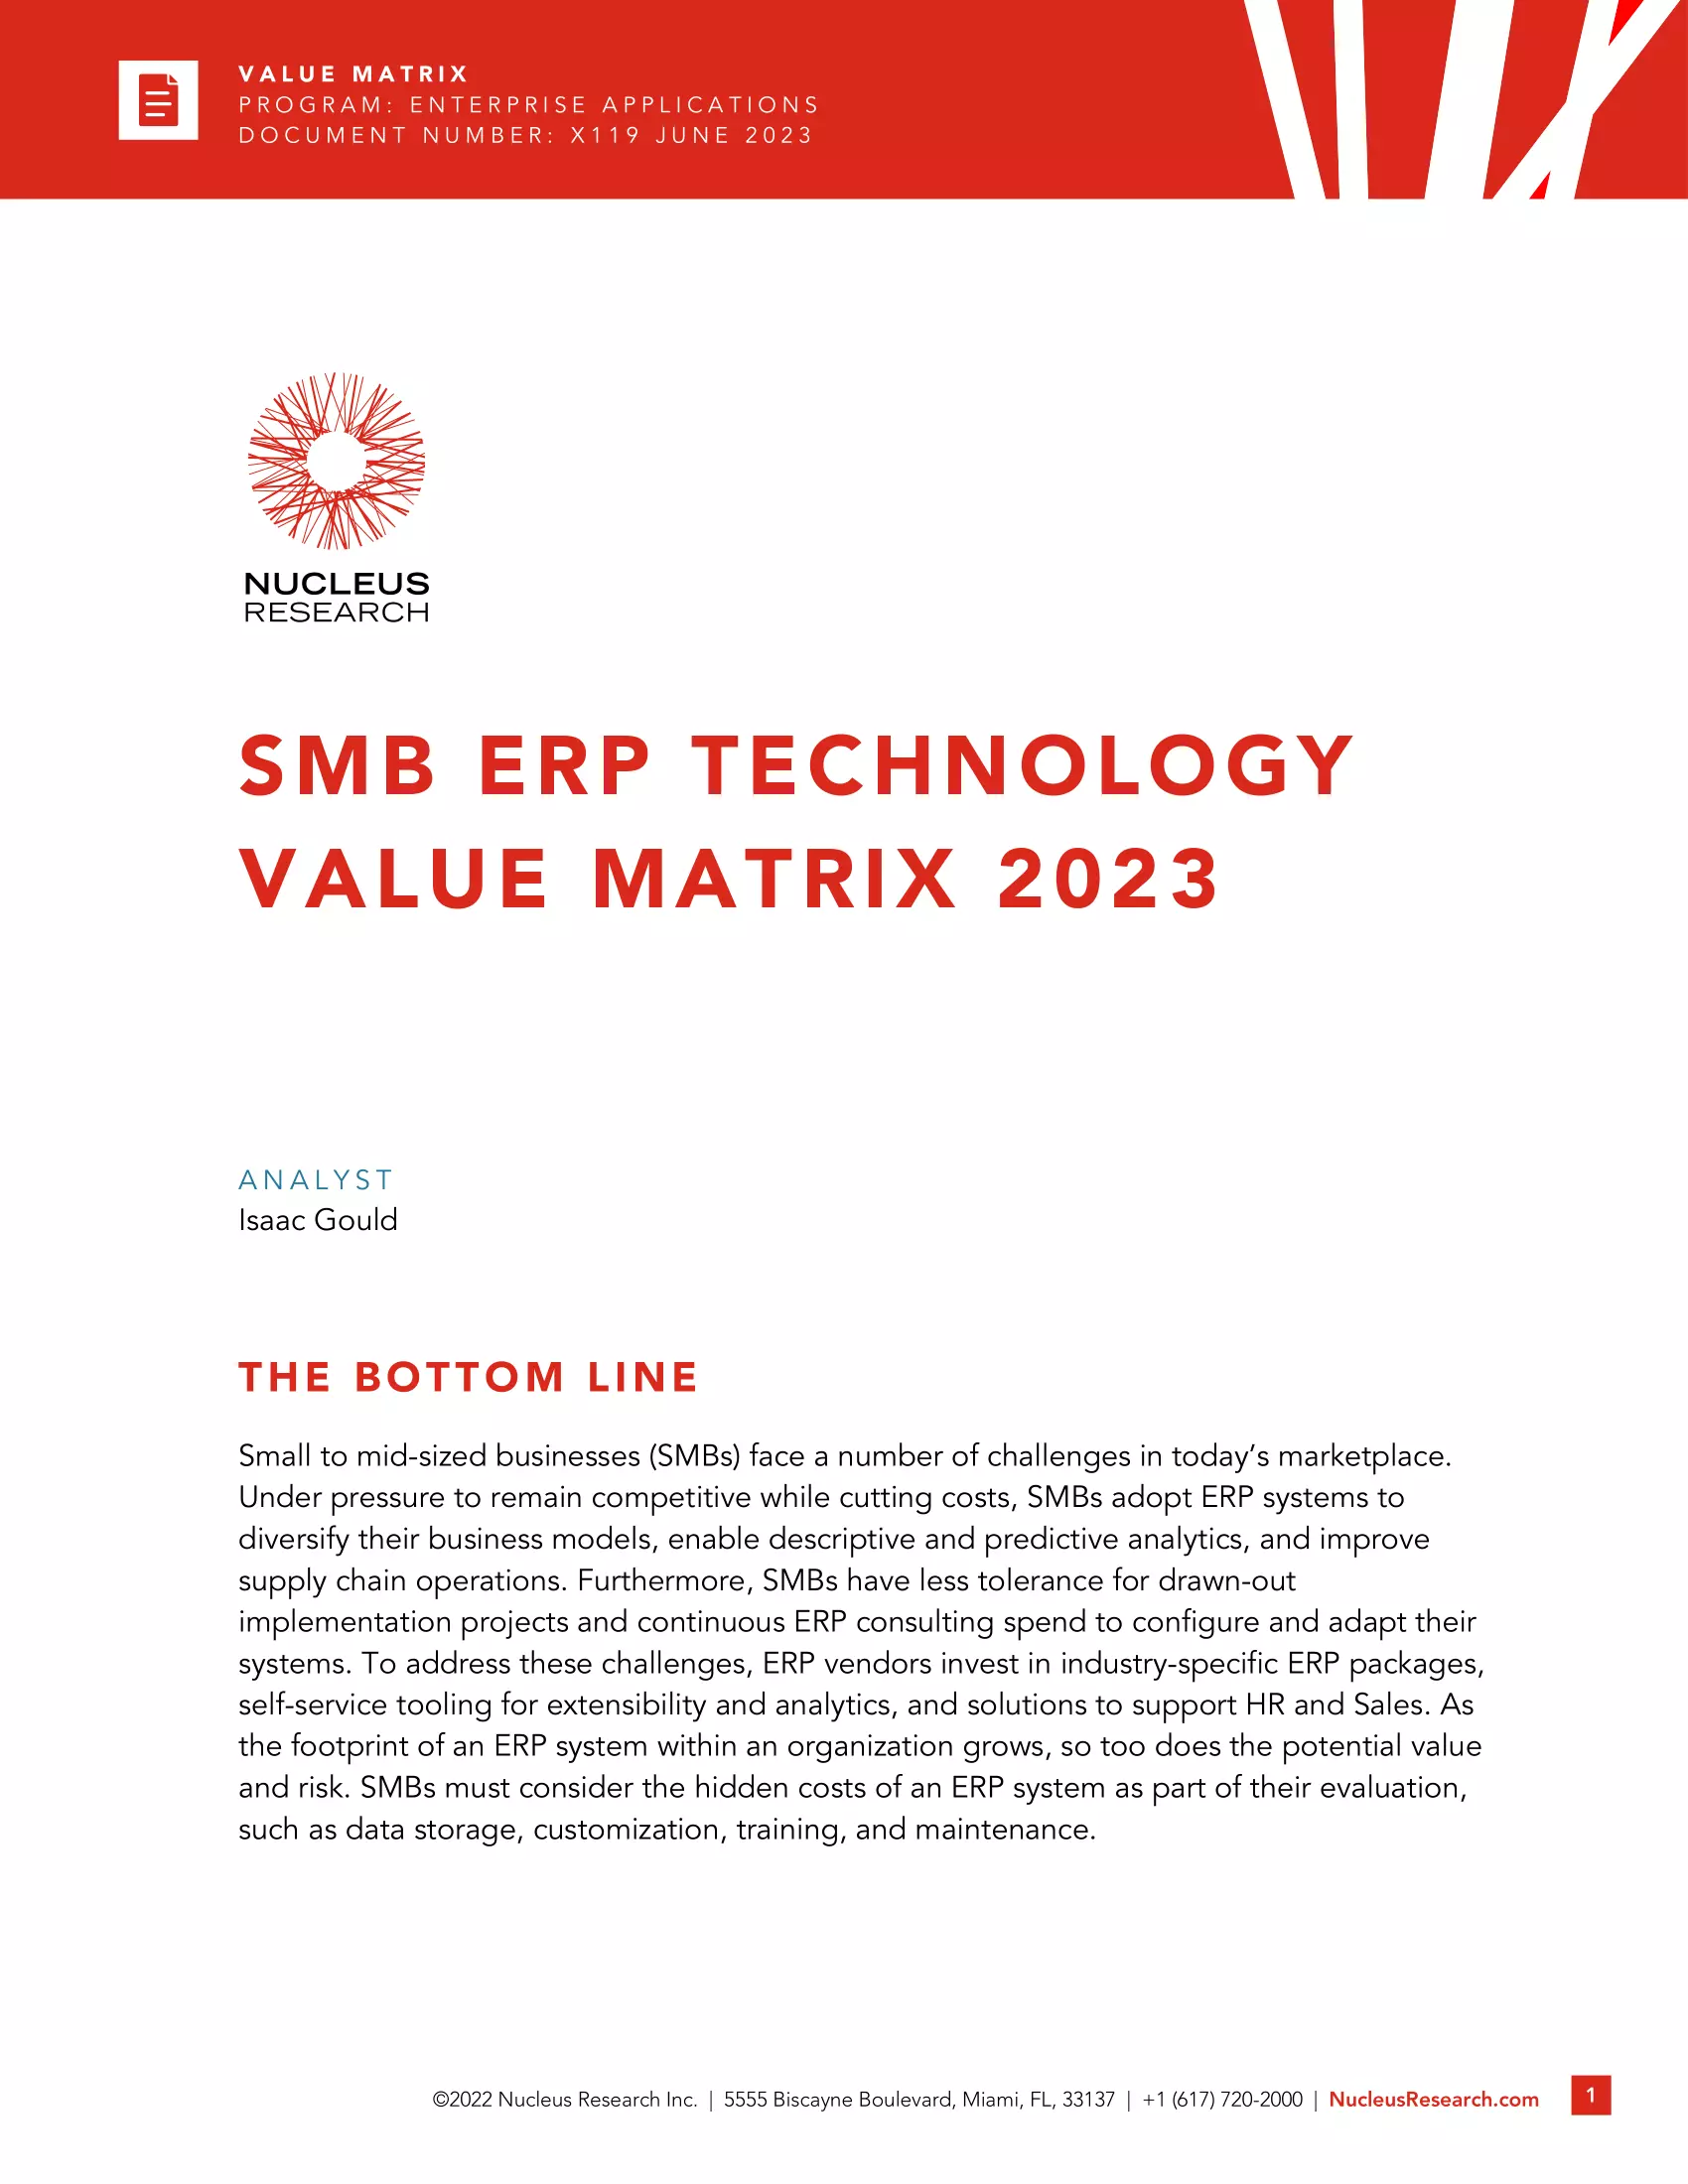 Por segundo año consecutivo, Acumatica ocupa el primer puesto en el informe Nucleus Research SMB Value Matrix, página 0